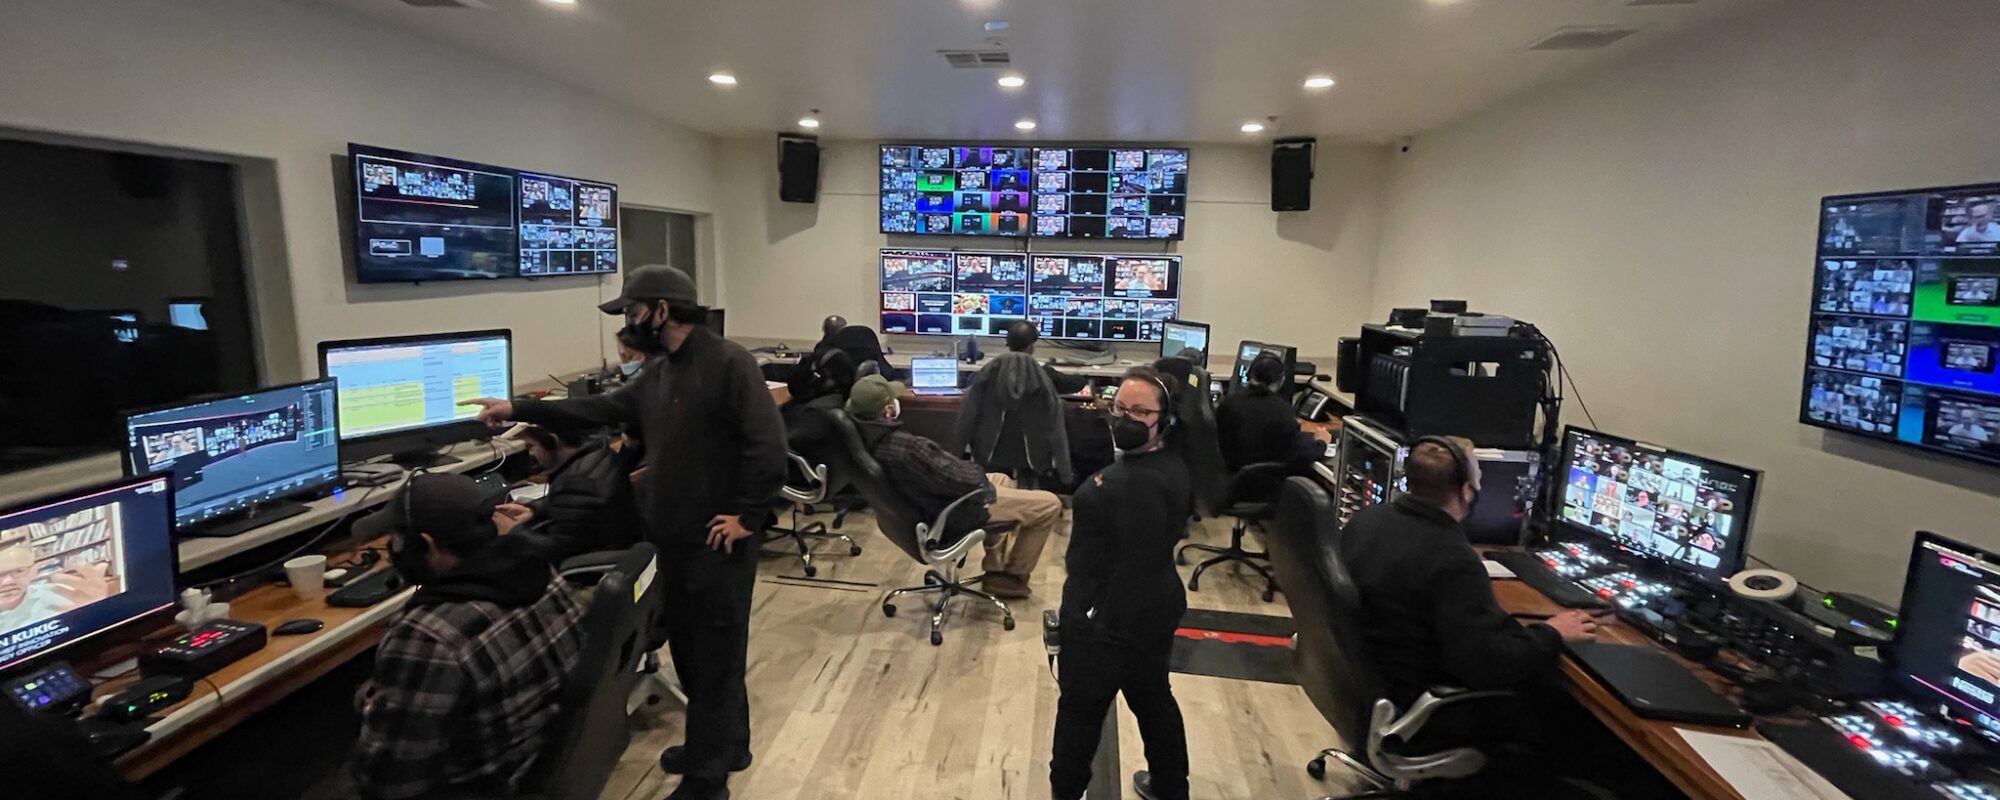 js control room